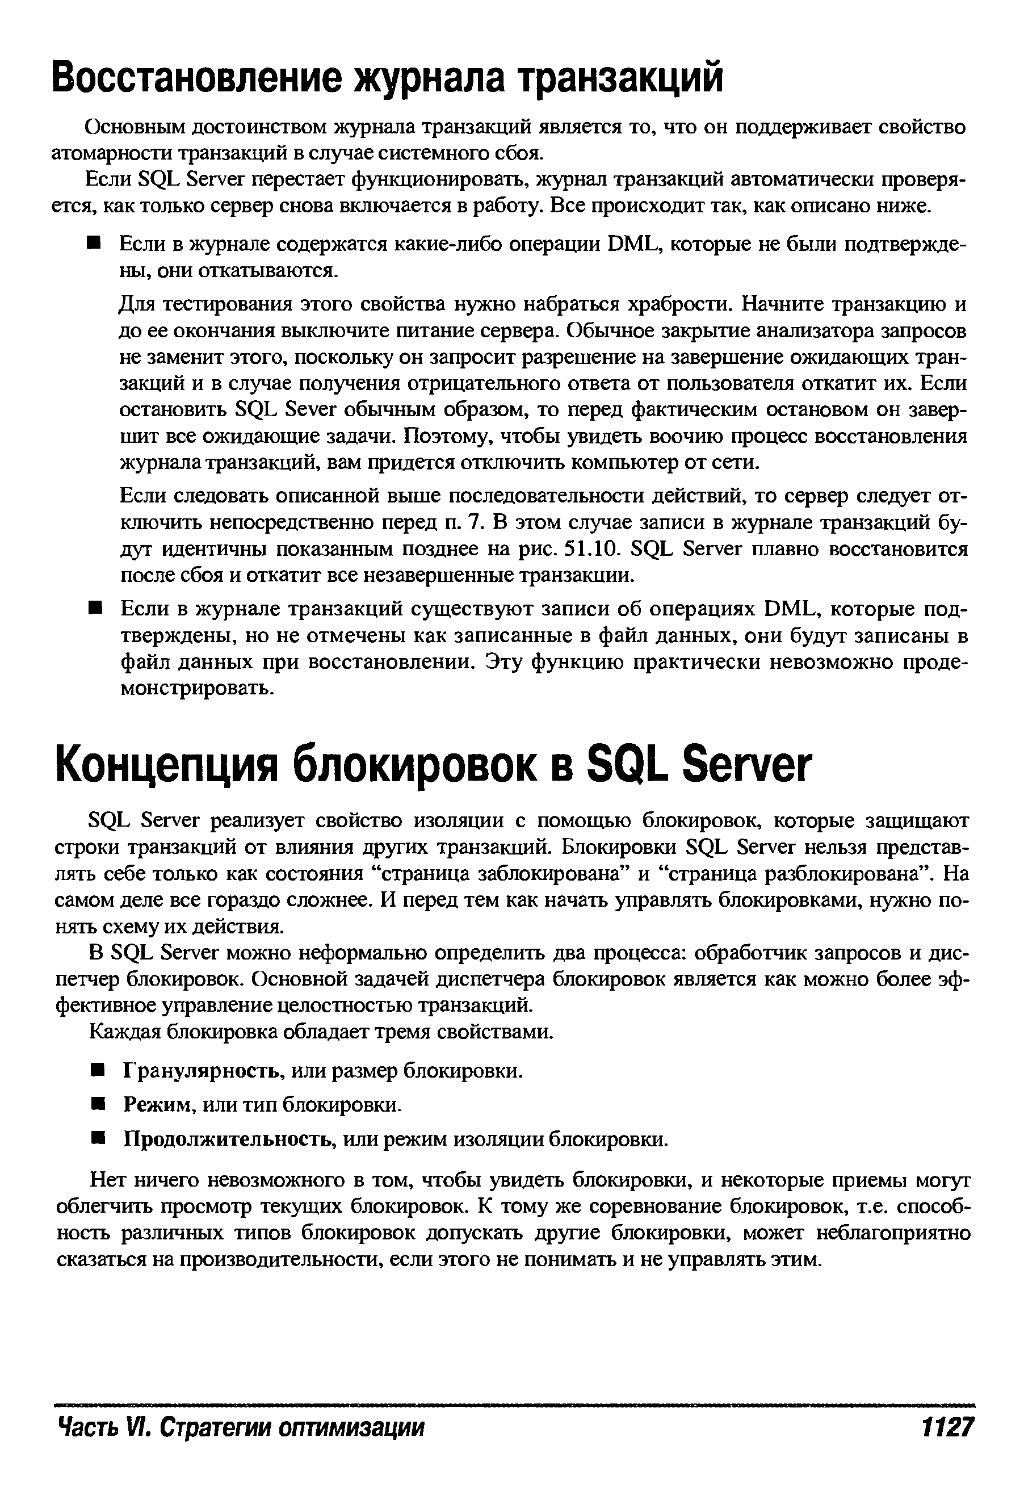 Концепция блокировок в SQL Server